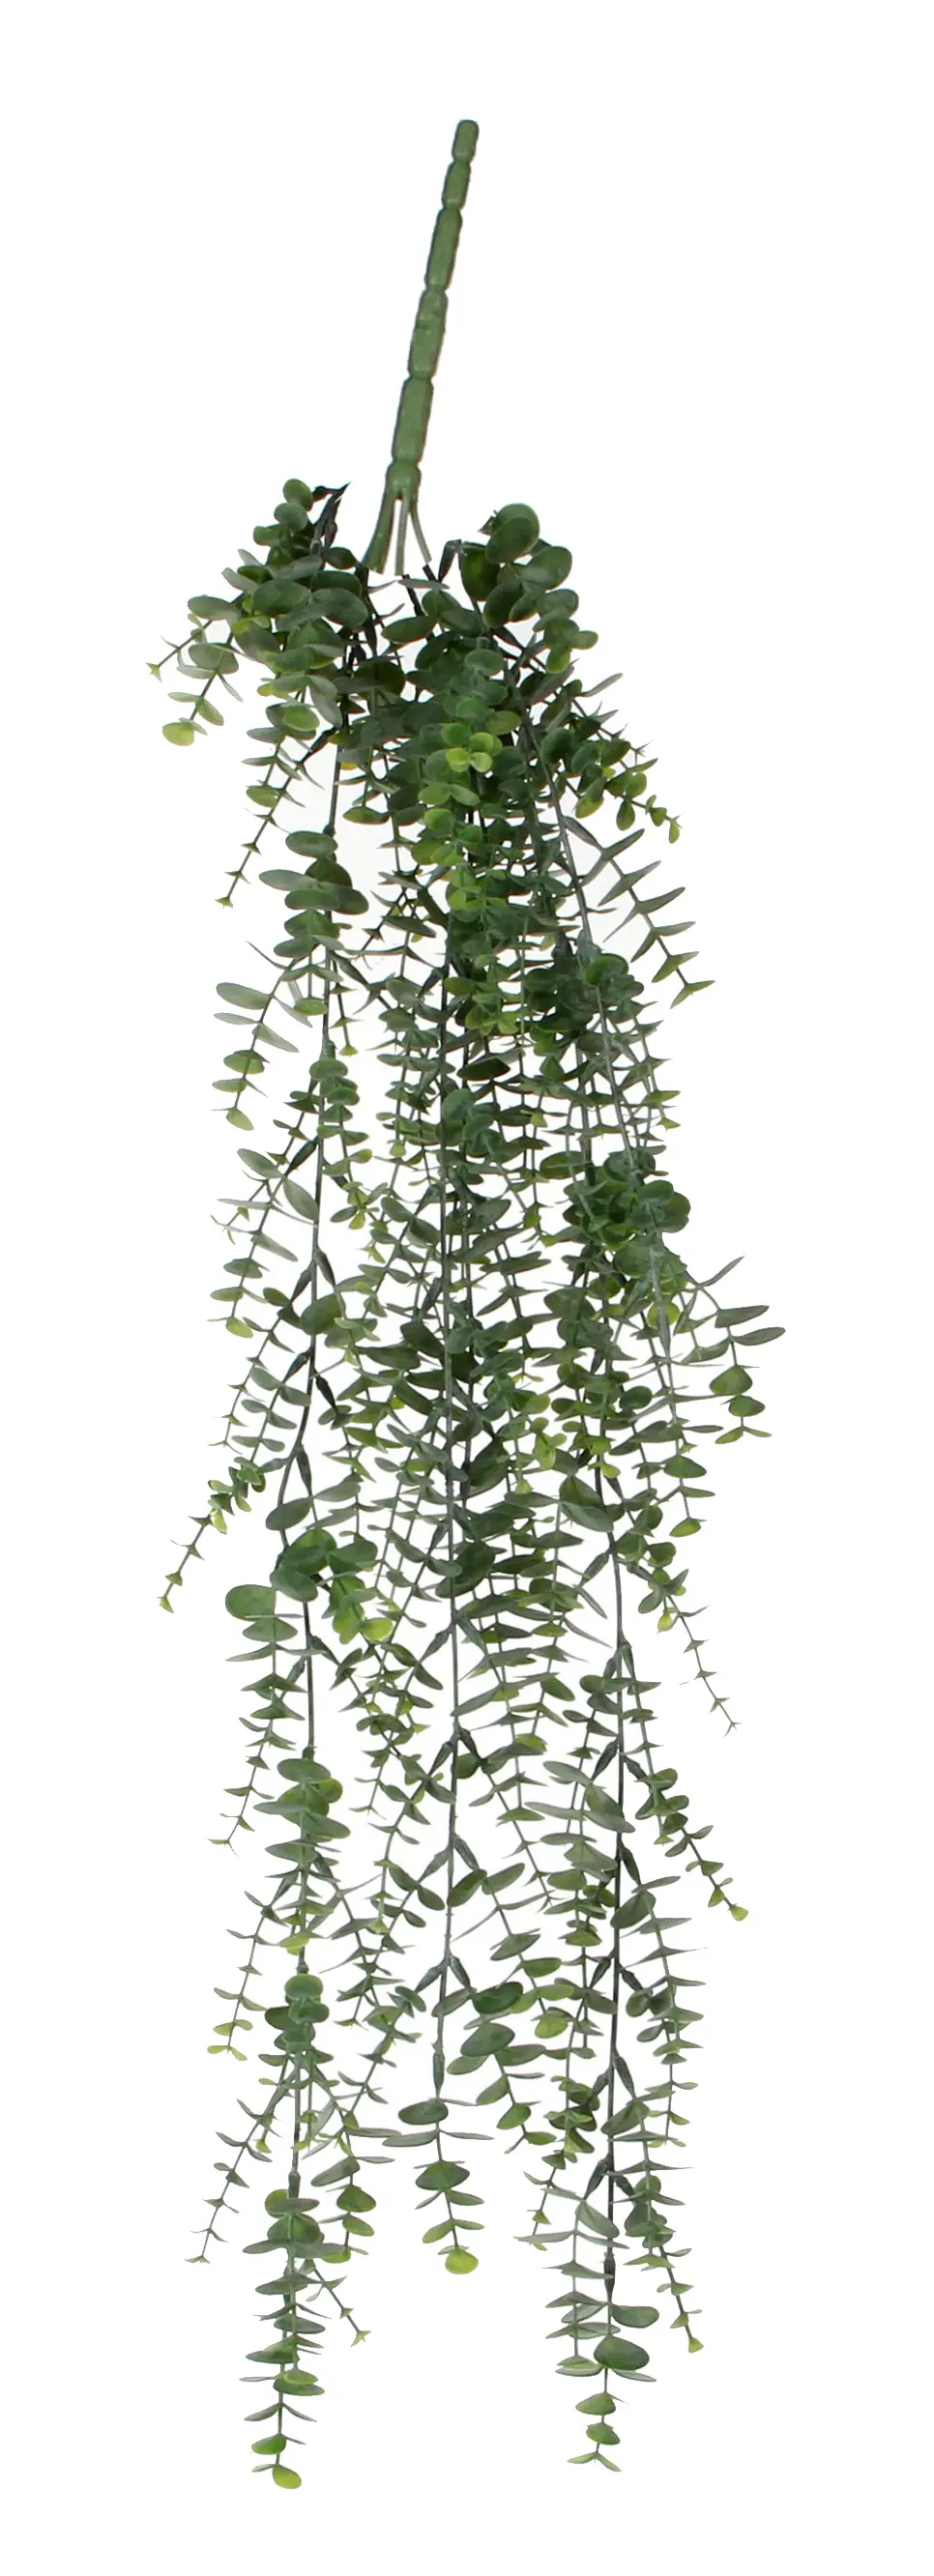 Eukalyptus H盲ngepflanze K眉nstliche